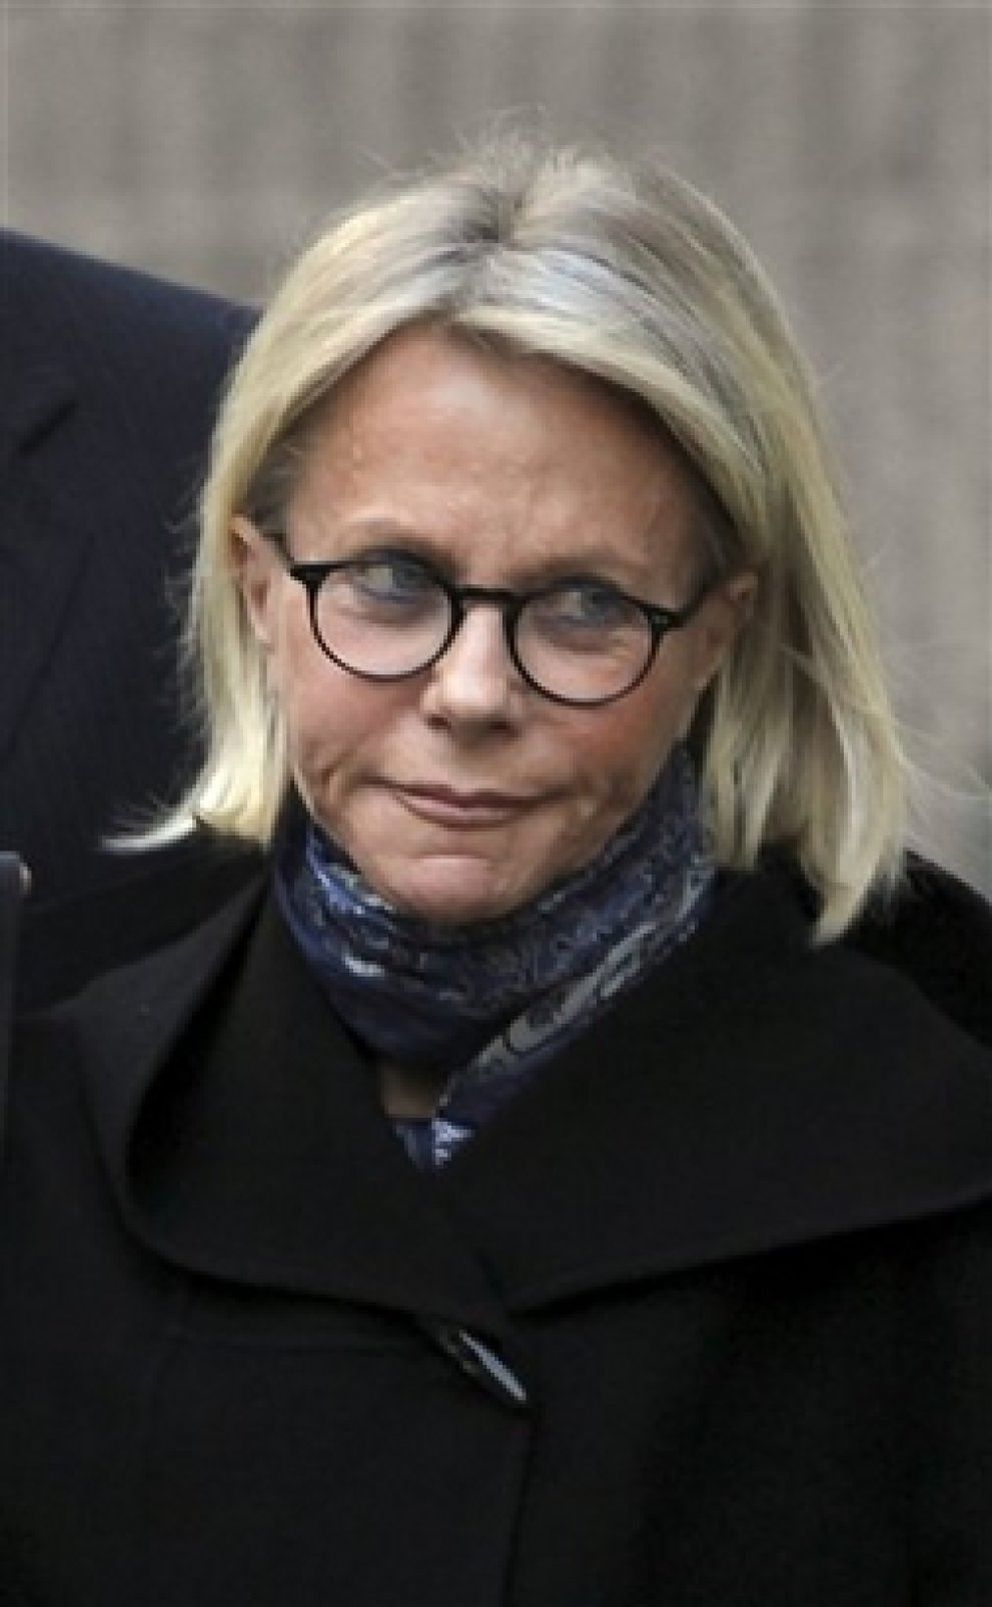 Foto: La esposa de Madoff tendrá que vivir con 2,5 millones de dólares el resto de su vida